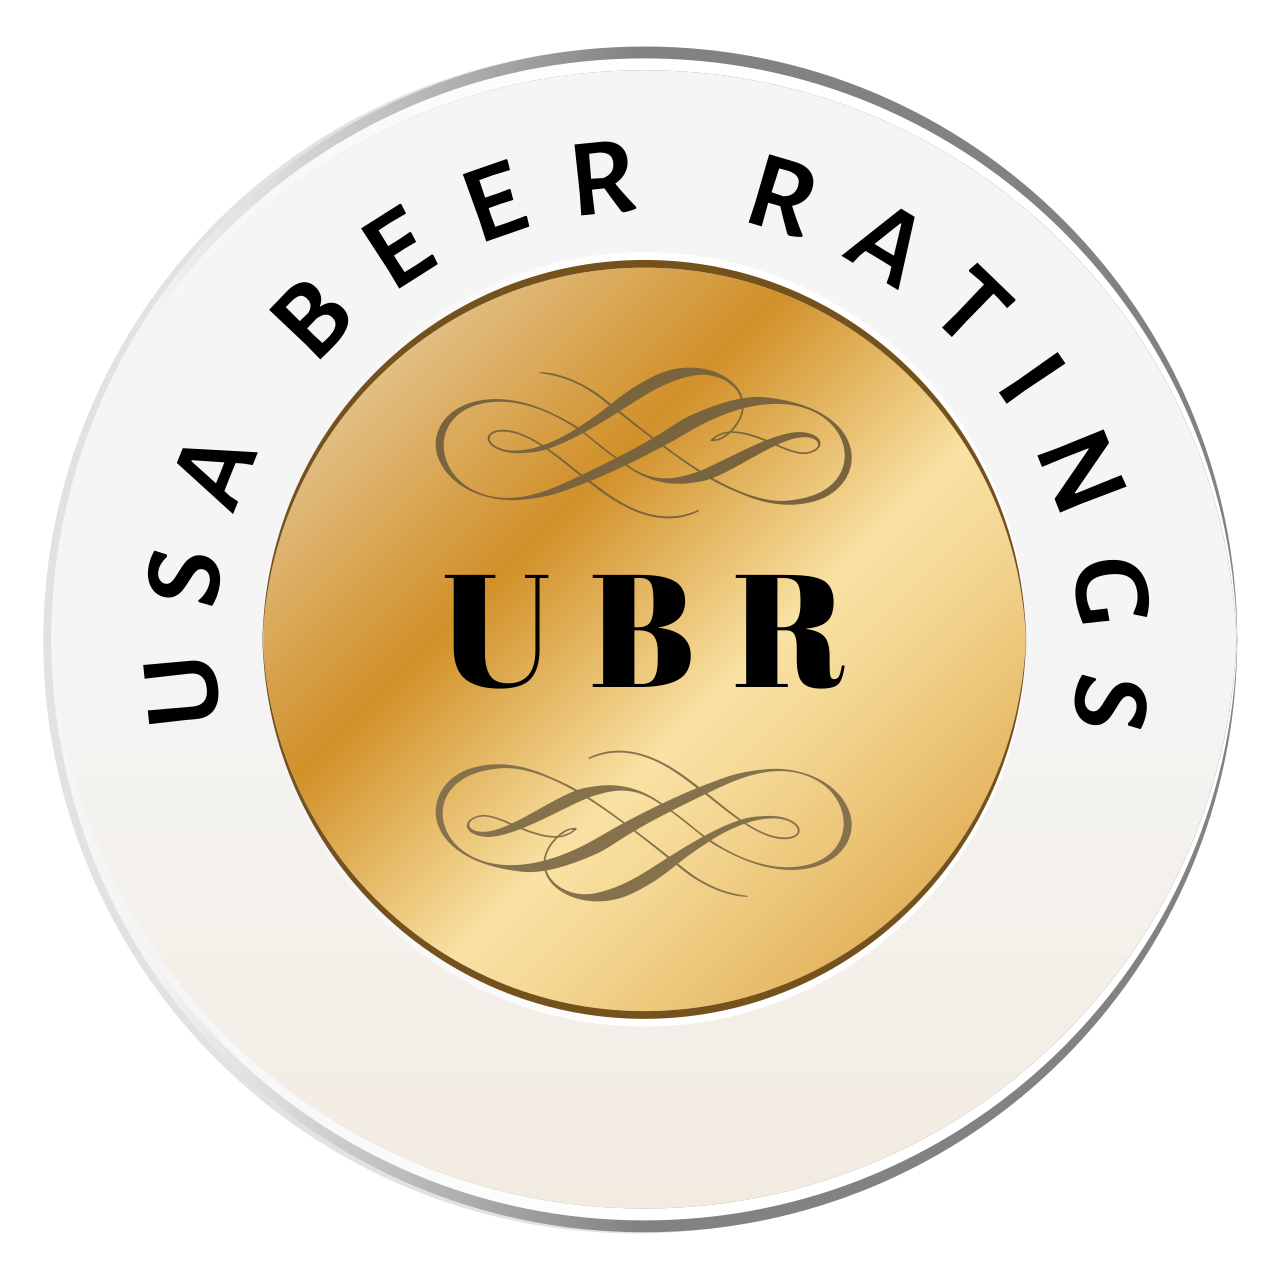 USA Beer Ratings Logo